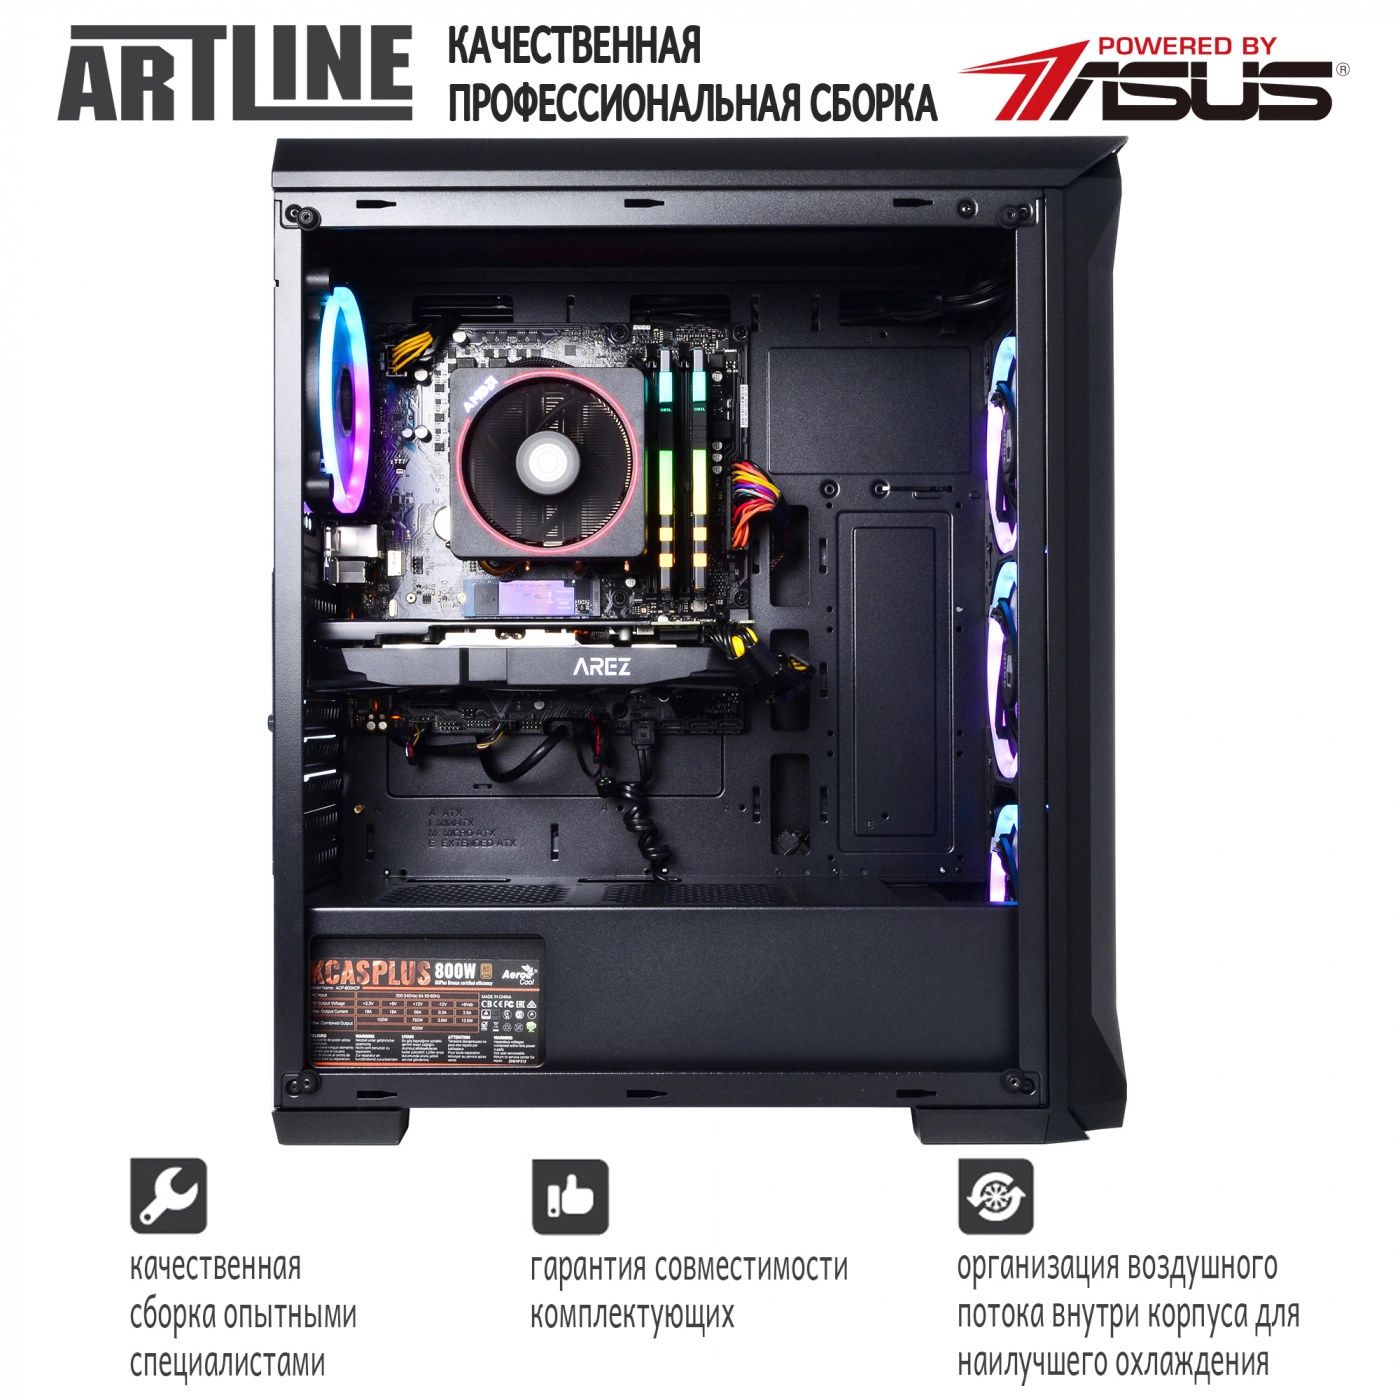 Купить Компьютер ARTLINE Gaming X65v23 - фото 4